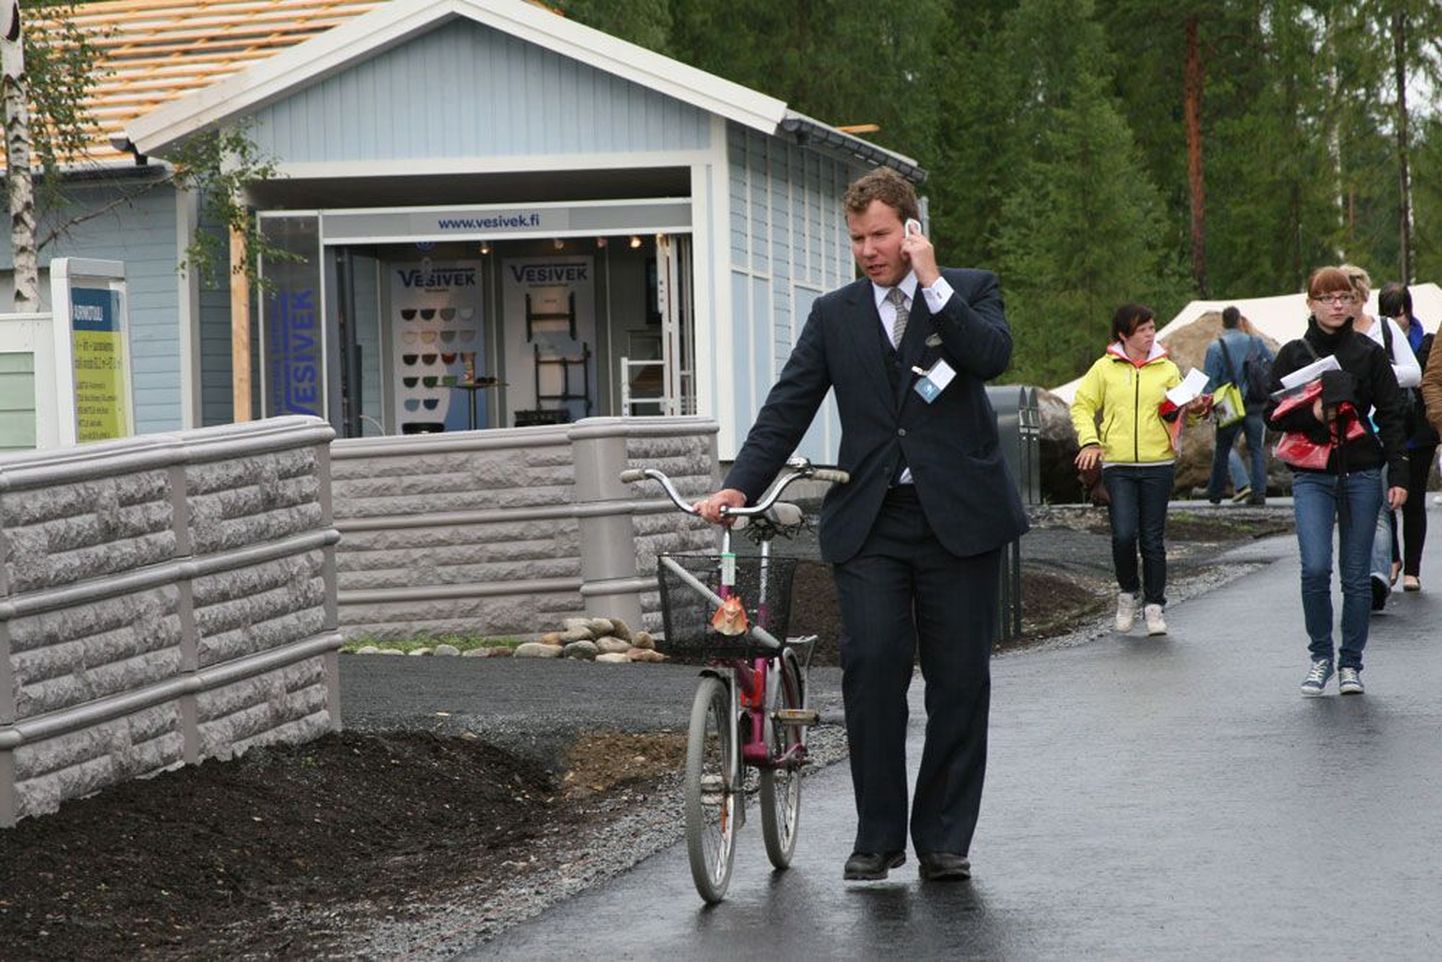 Soome elamumessil käib kibe kinnisvaramüük, kaubaks lähevad kõik 40 näidismaja.